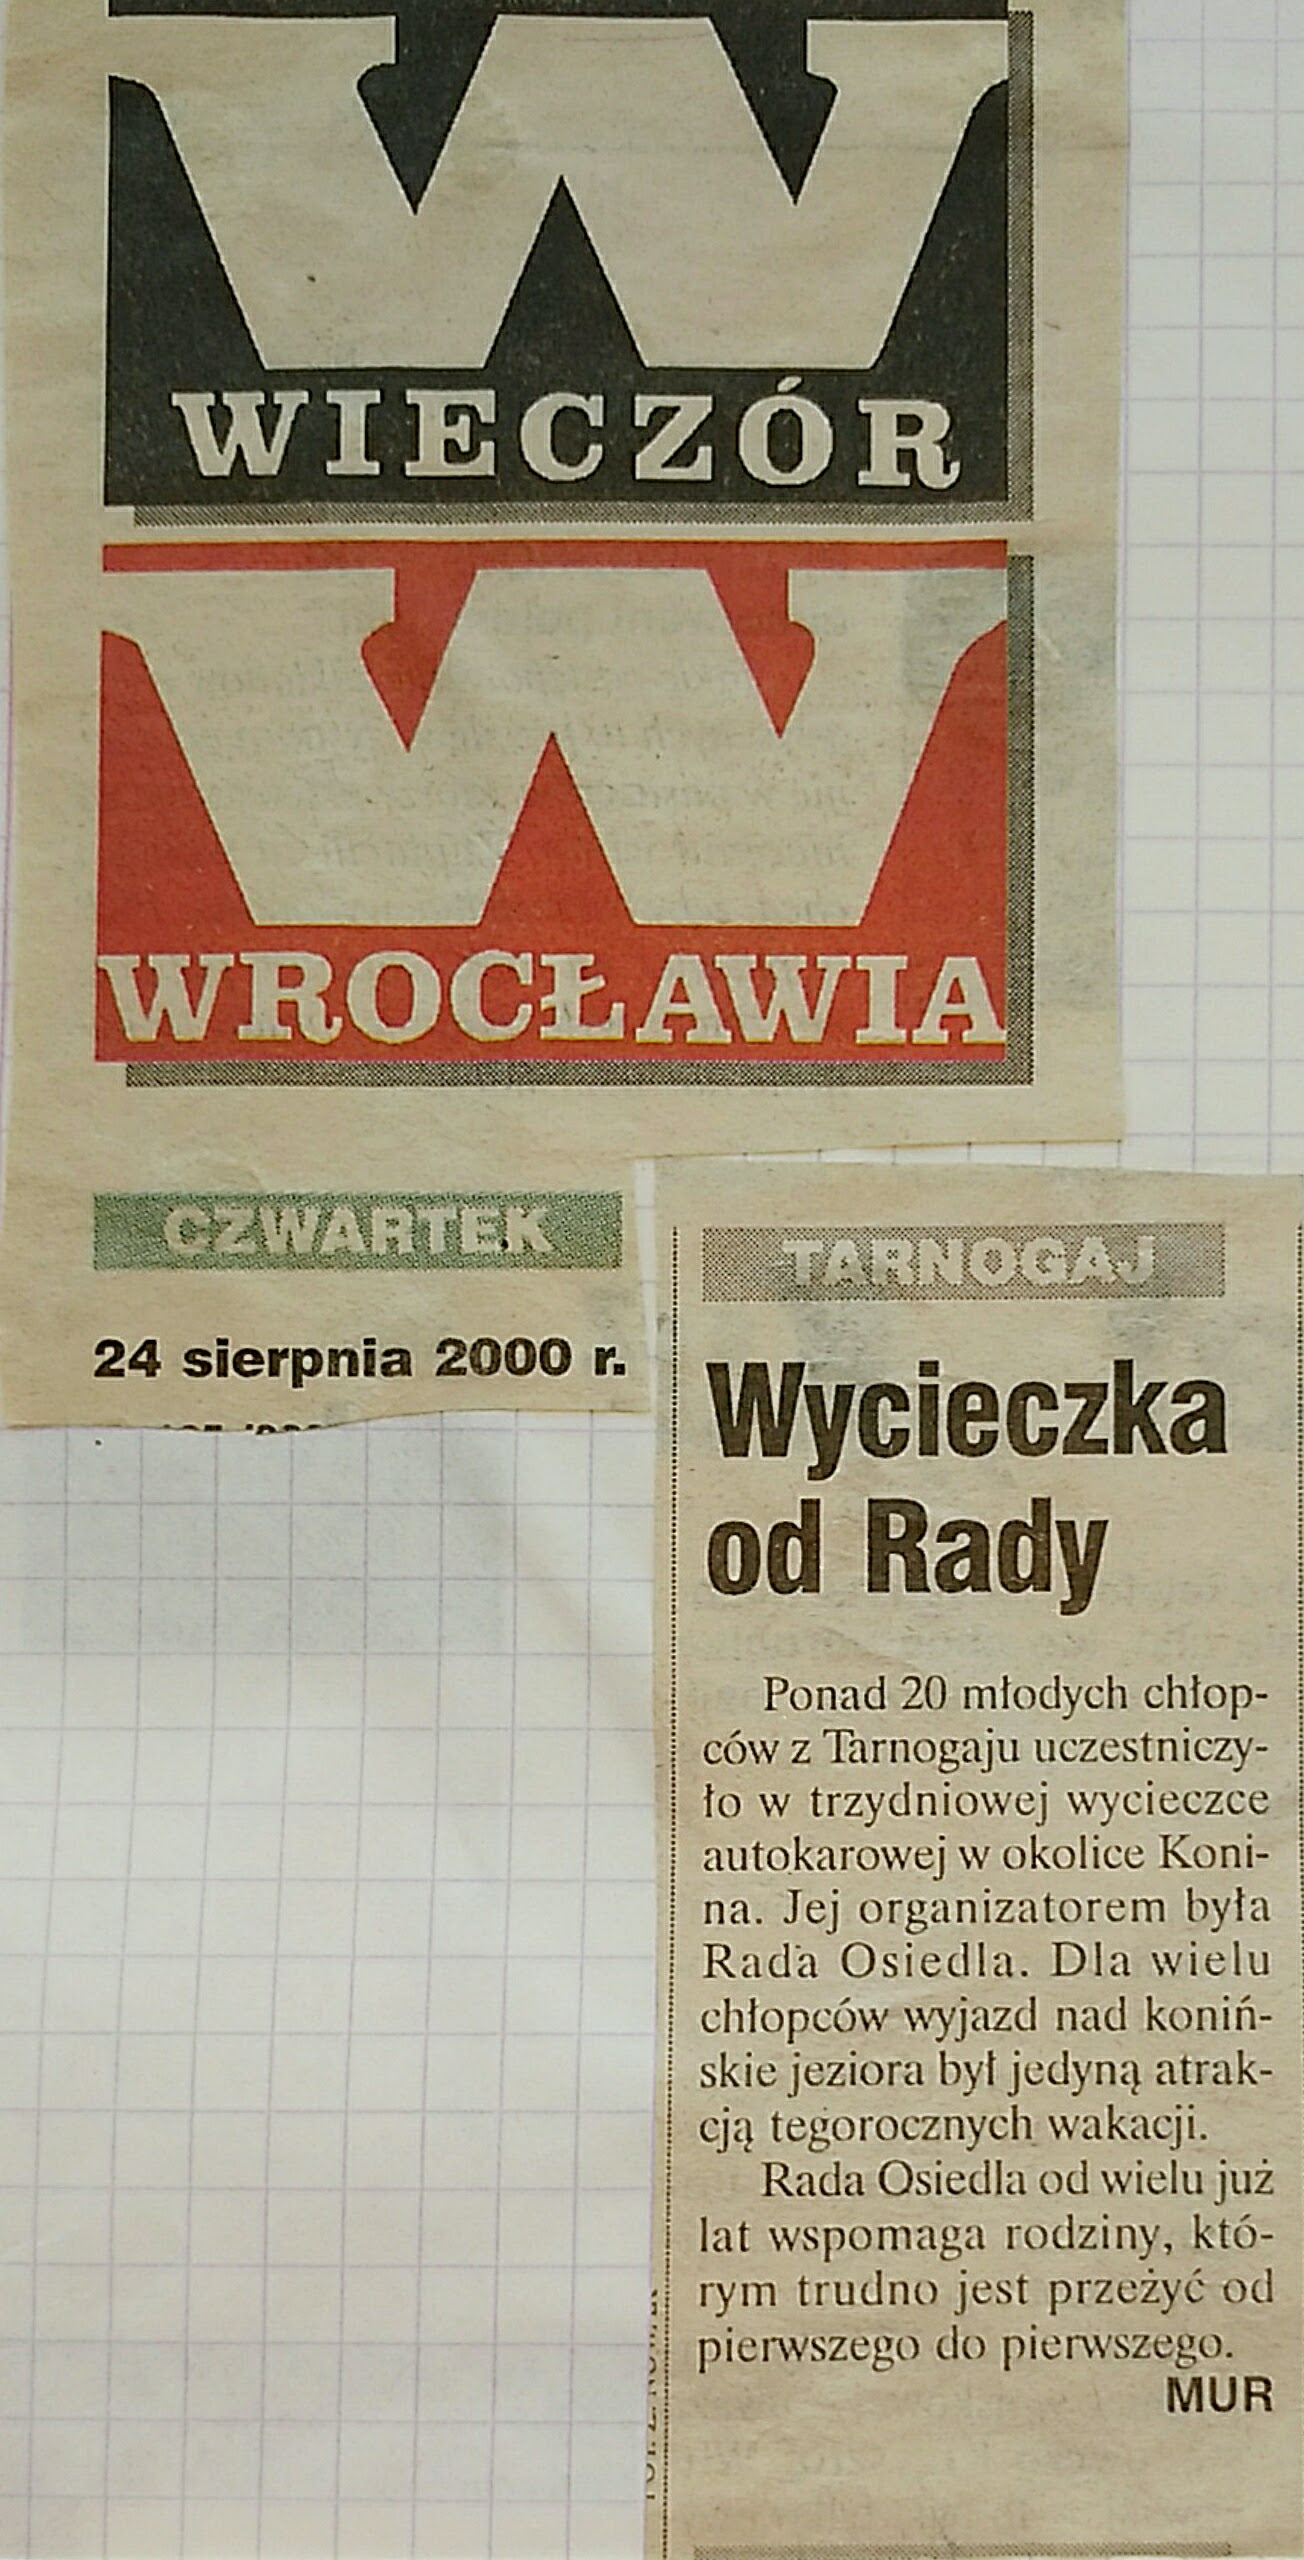 23 Sierpnia 2000 Wieczór Wrocławia